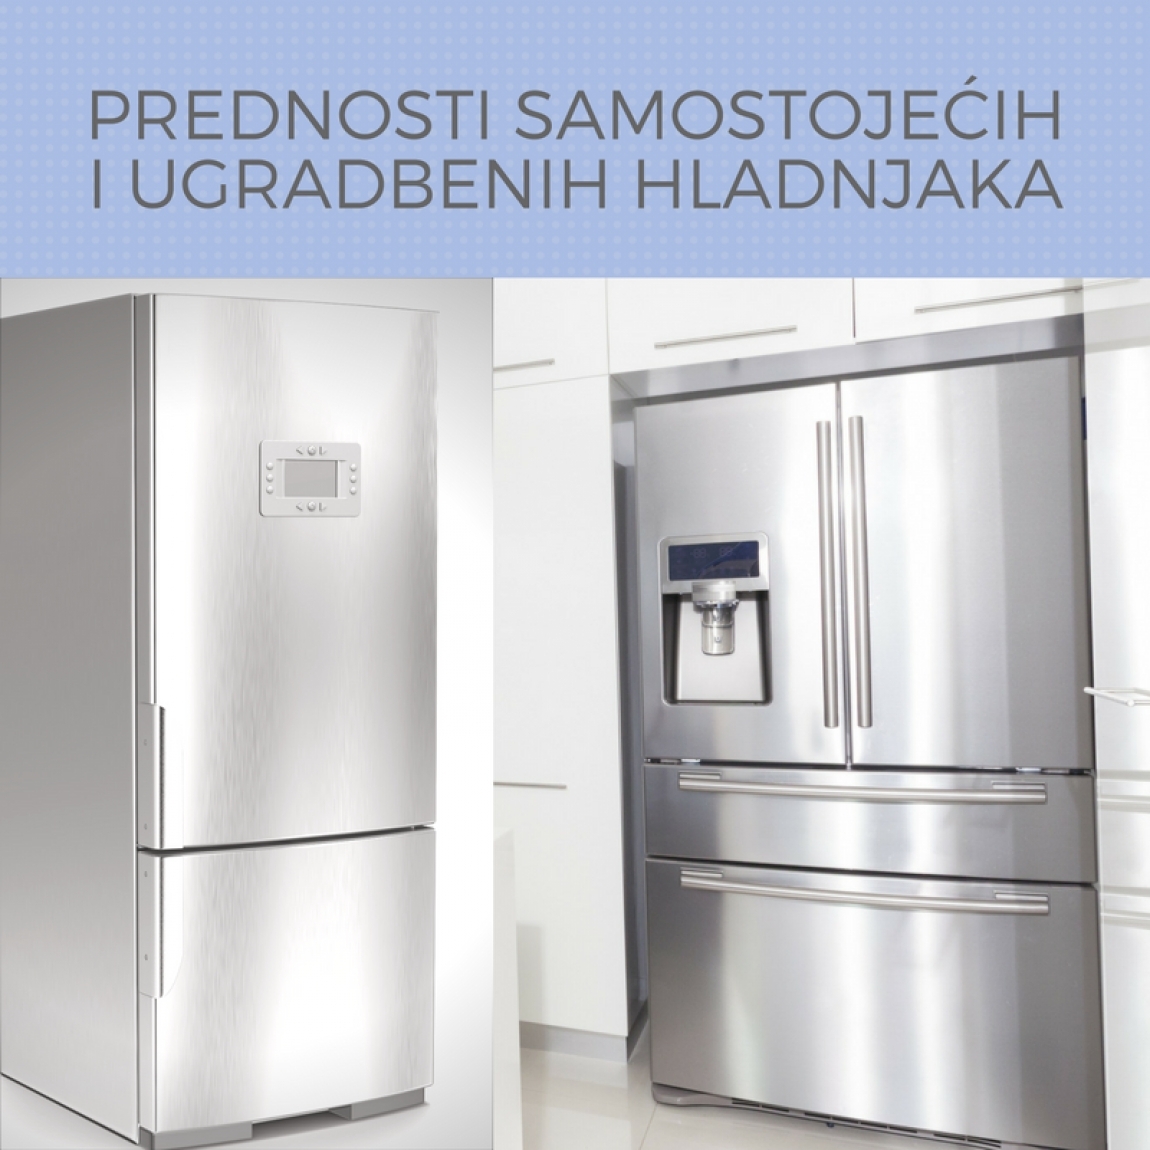 Prednosti samostojećih i ugradbenih hladnjaka